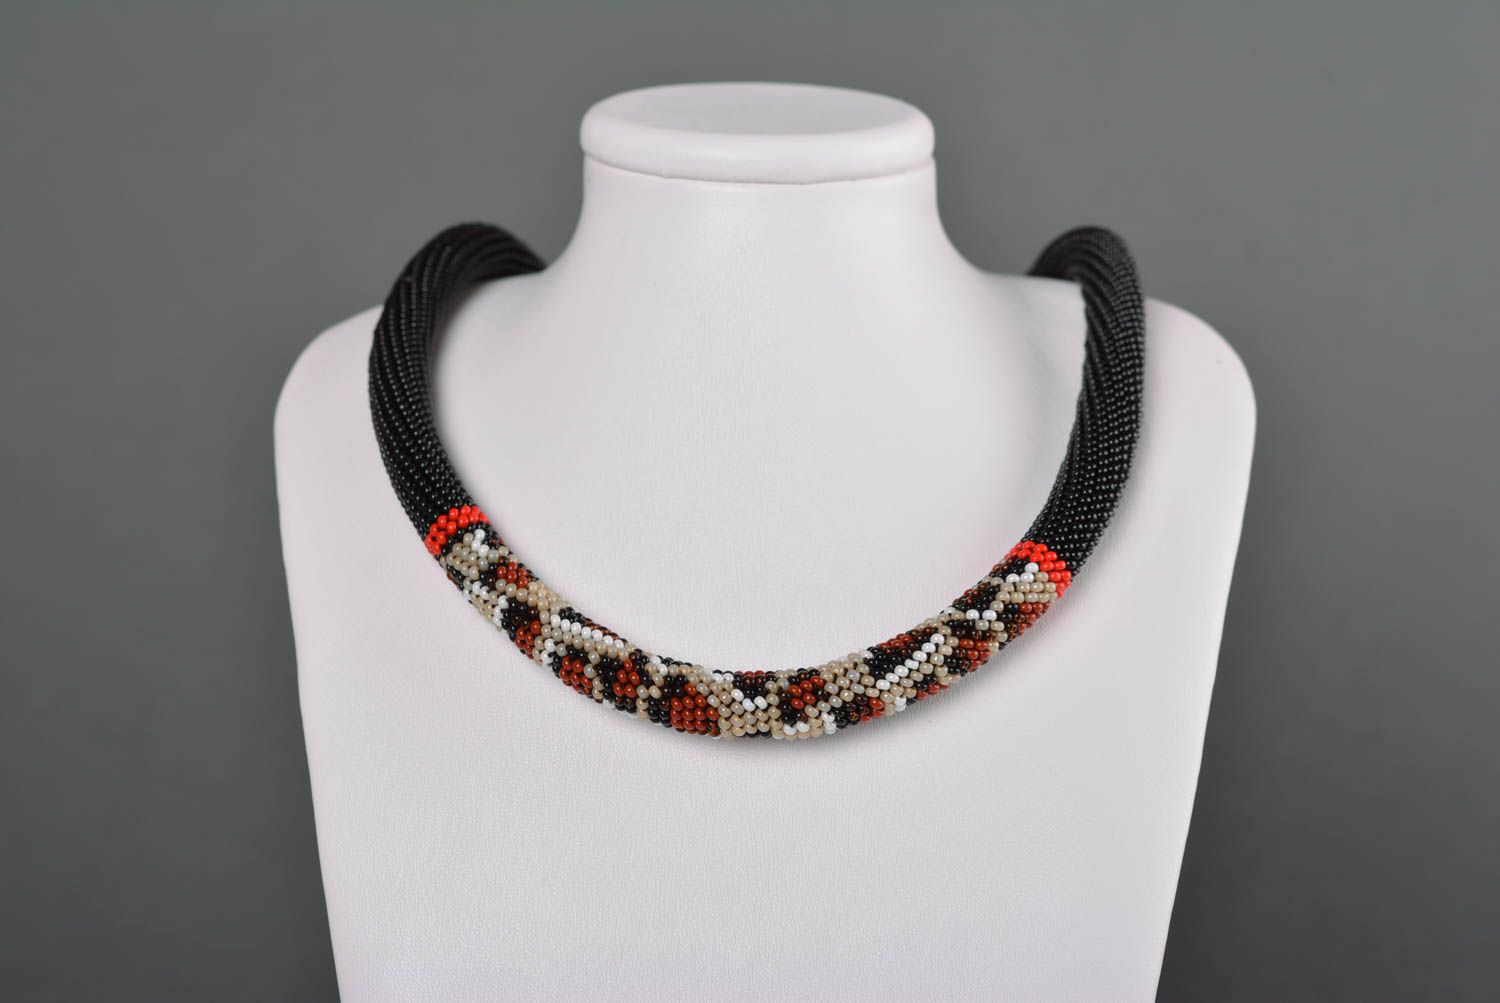 Handmade designer beaded necklace stylish elegant necklace cute jewelry photo 2